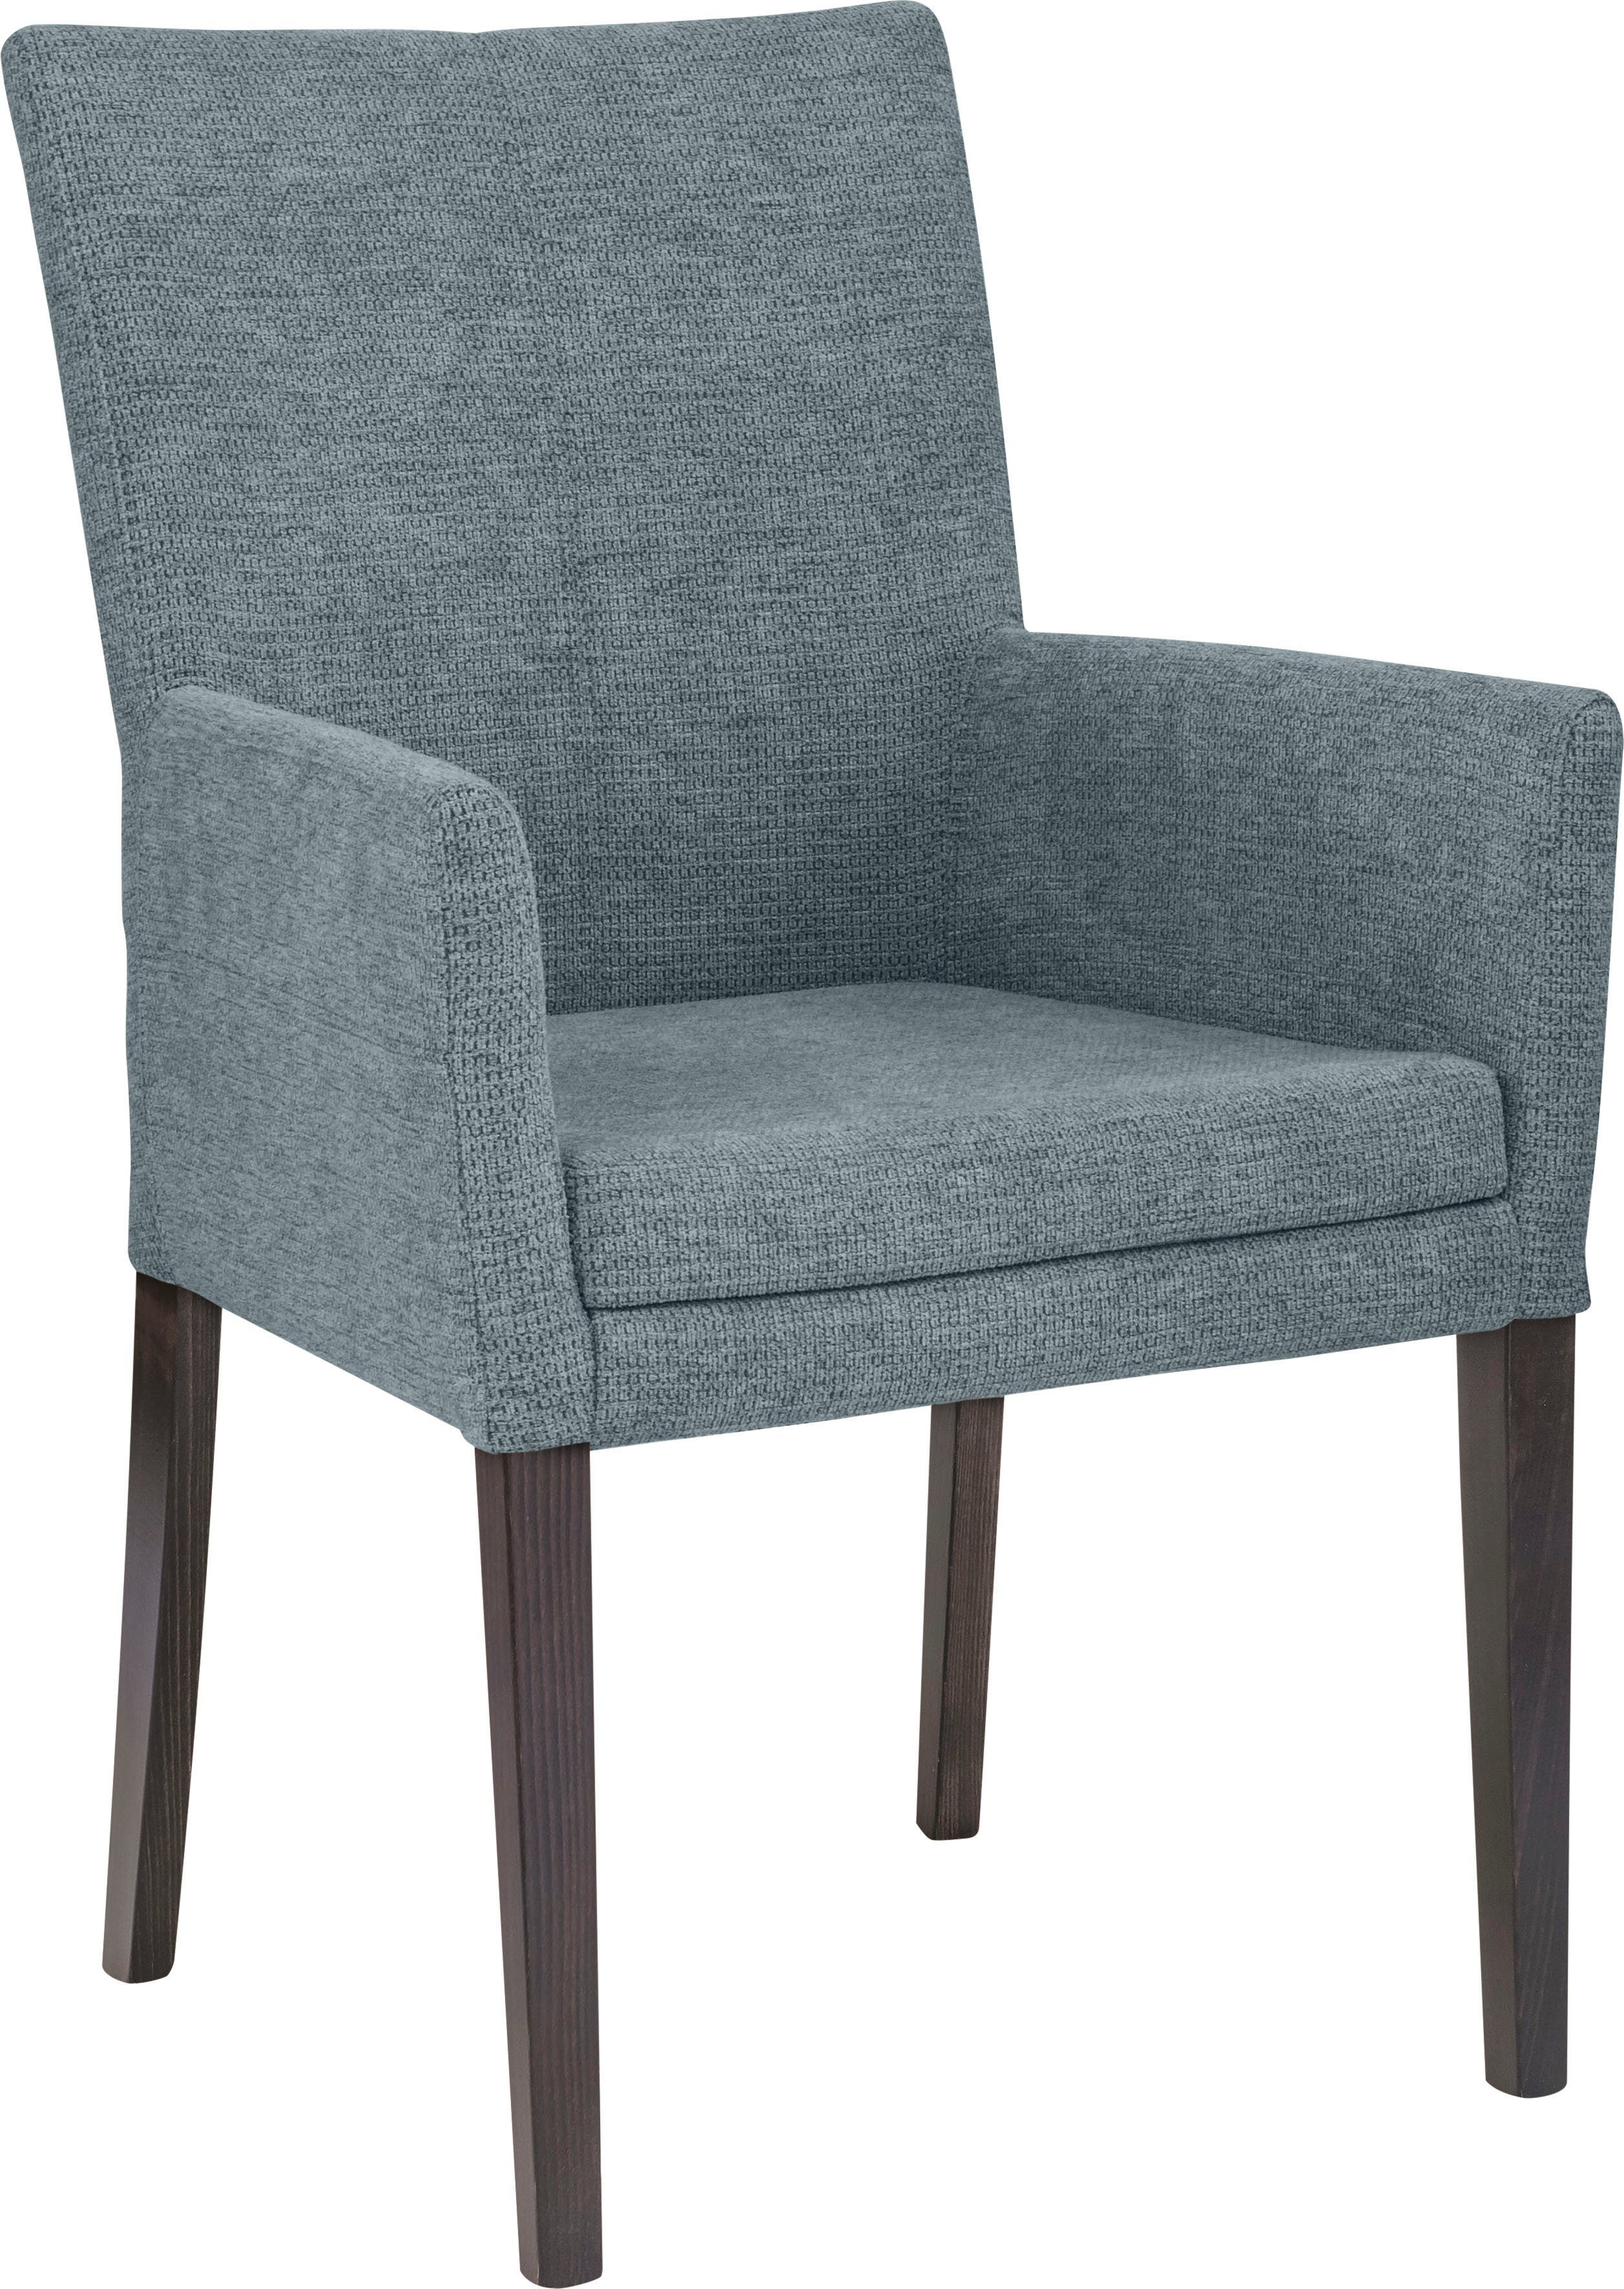 Home affaire Armlehnstuhl Aspen, Beine aus massiver Buche, wengefarben lackiert | Stühle